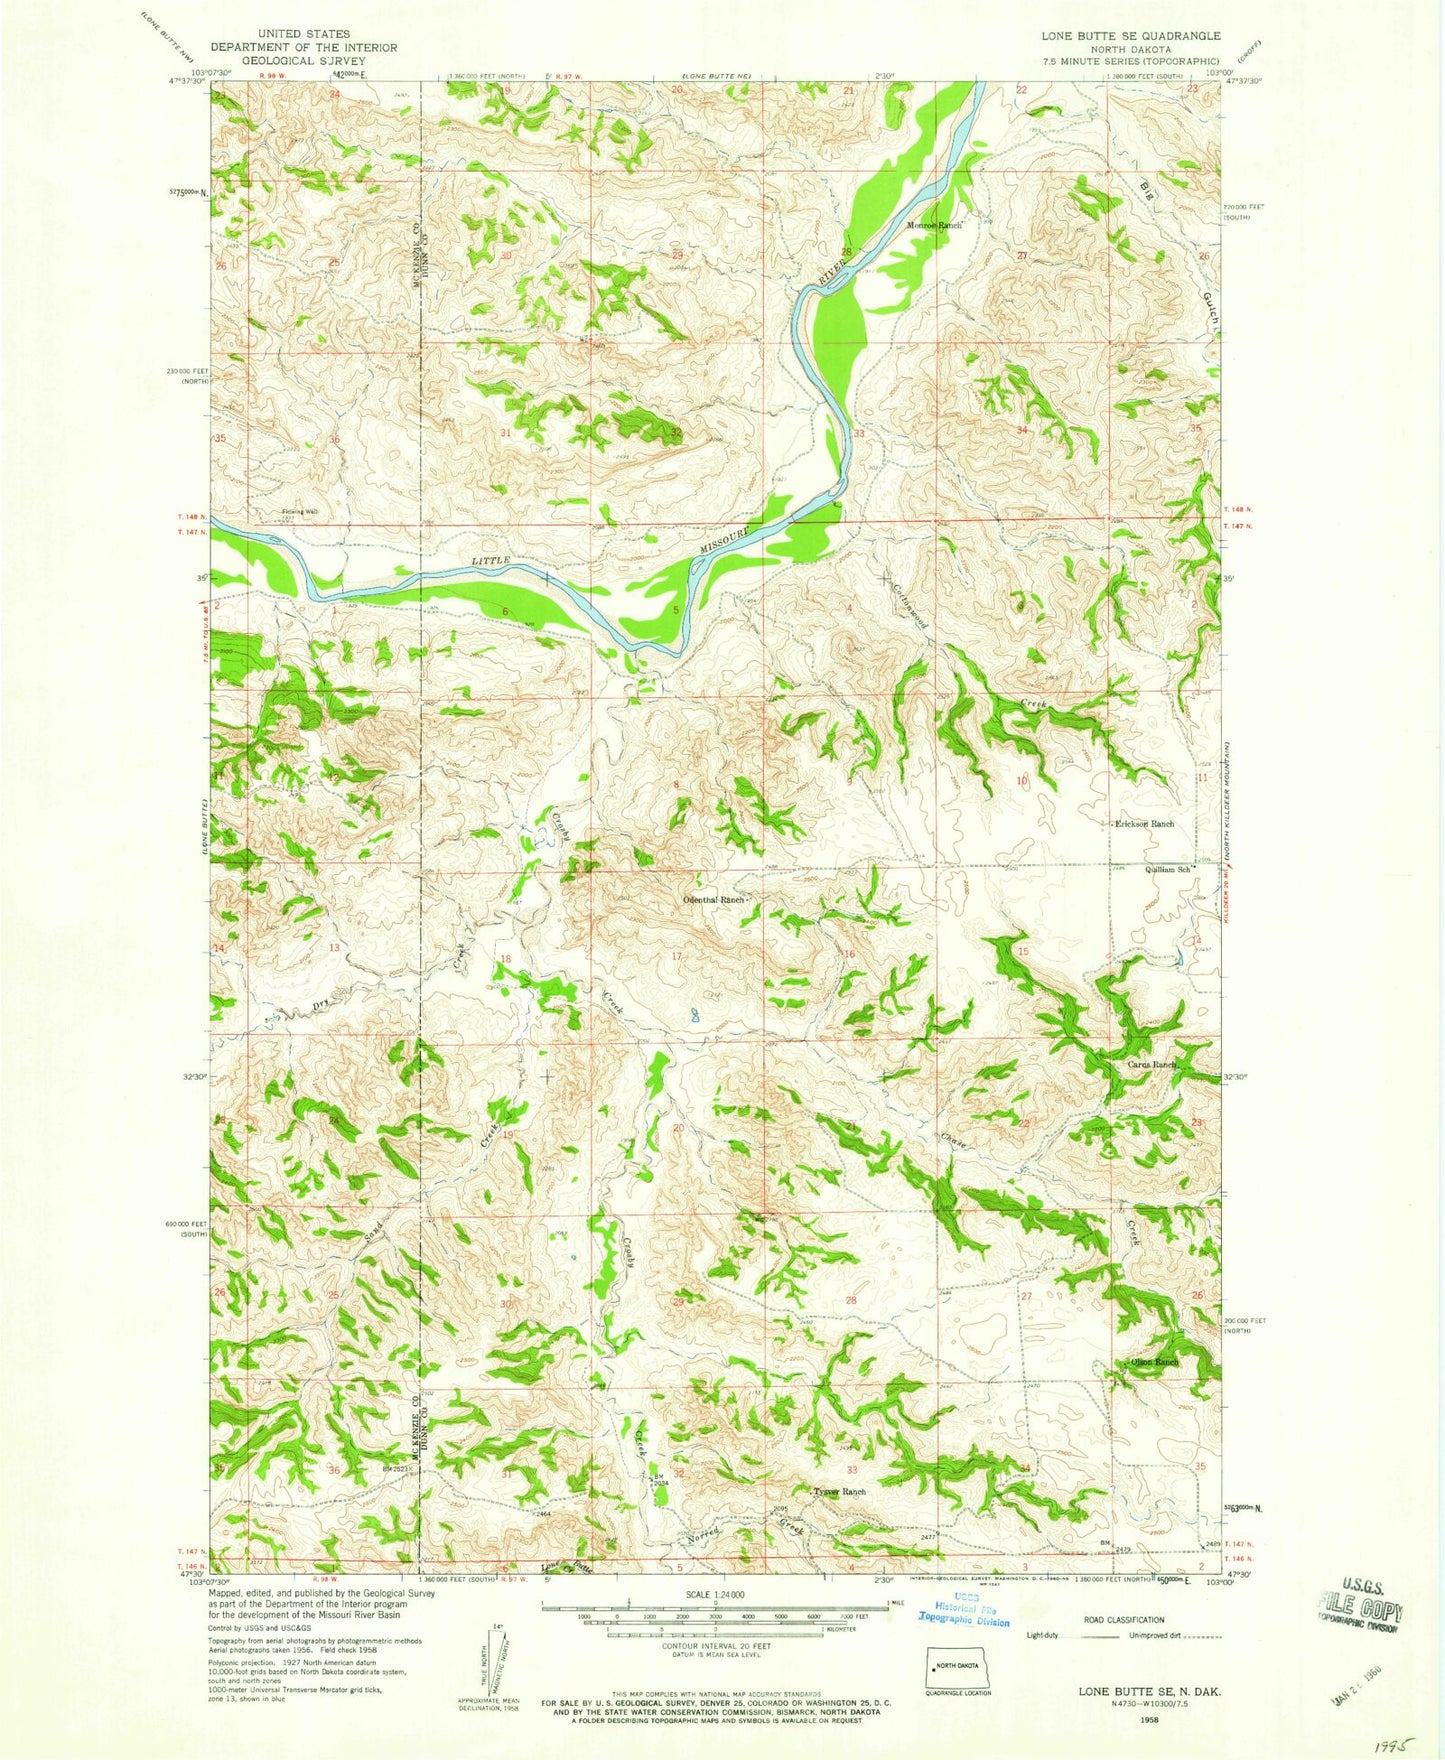 Classic USGS Lone Butte SE North Dakota 7.5'x7.5' Topo Map Image